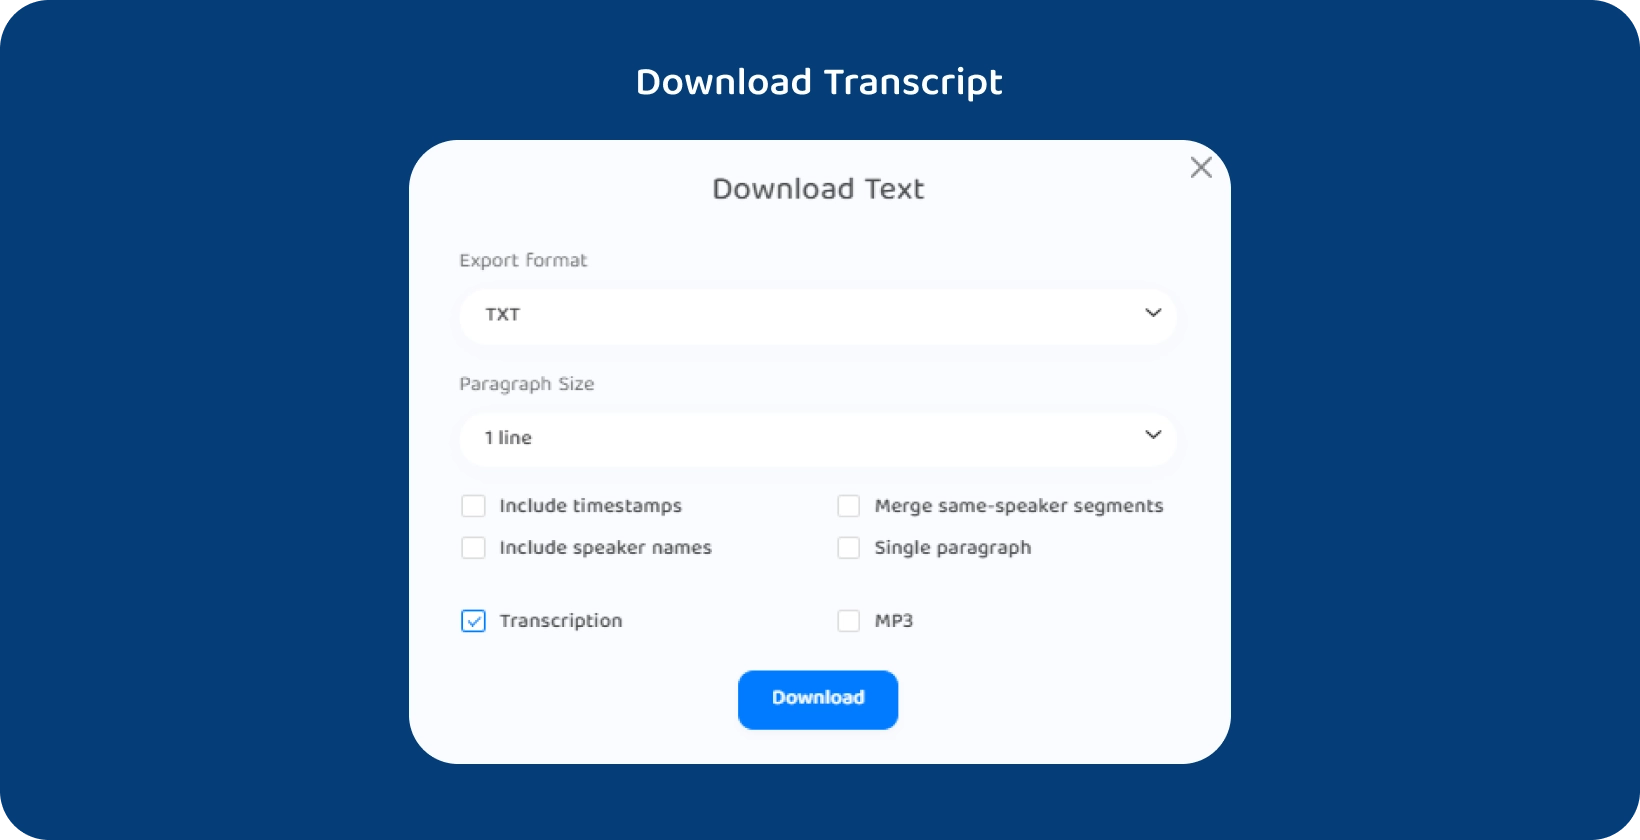 Interface Transkriptor montrant les options de téléchargement du texte d’une conférence transcrite.